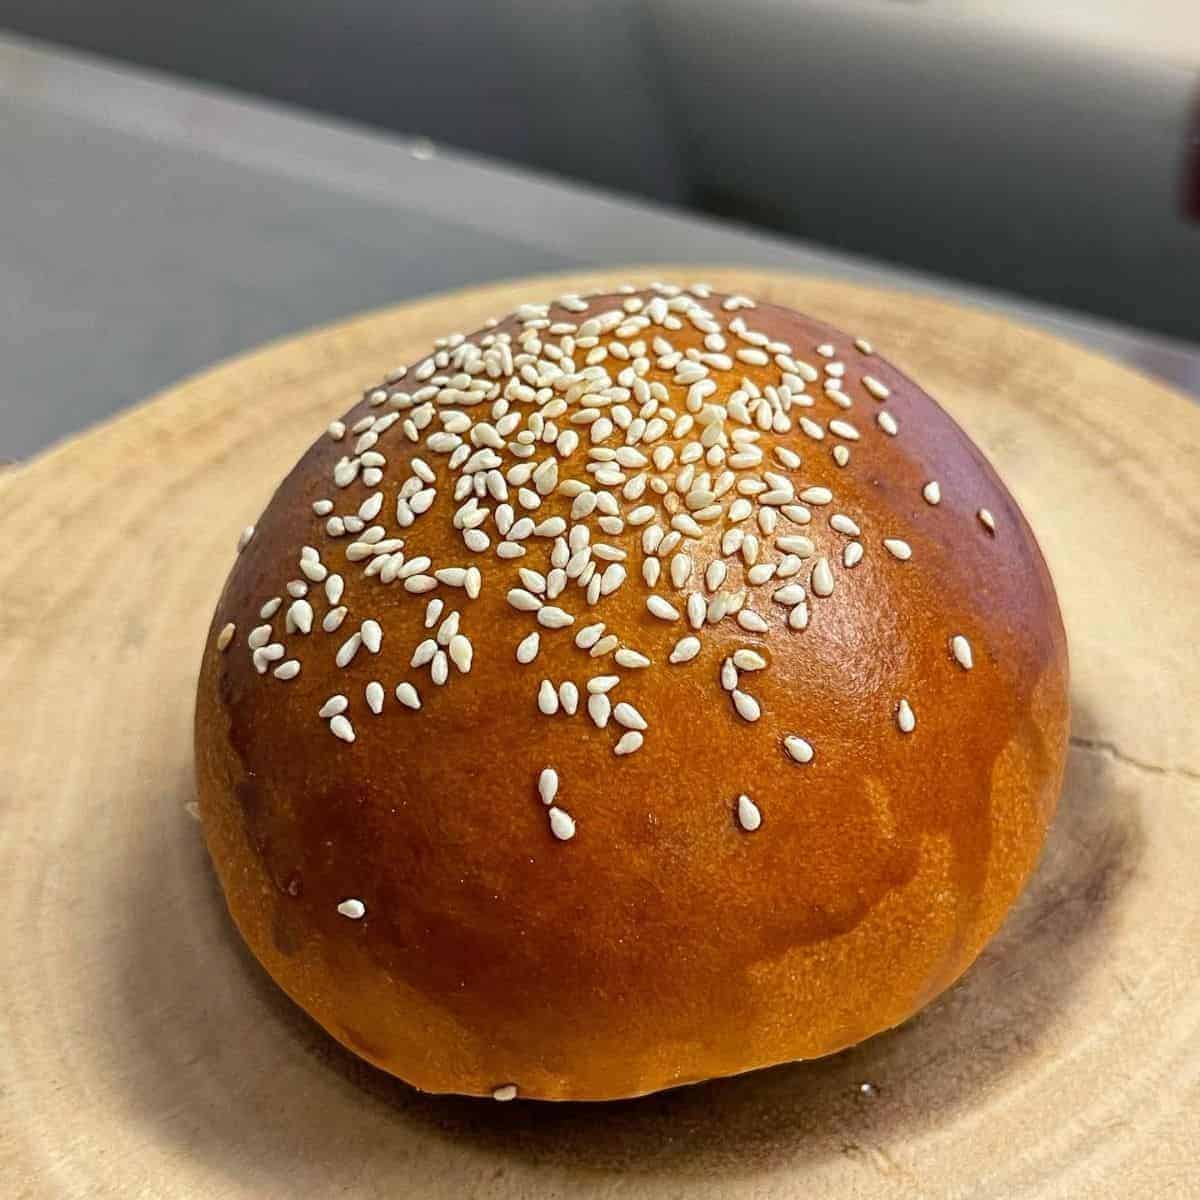 Freshly baked Japanese sweet bread